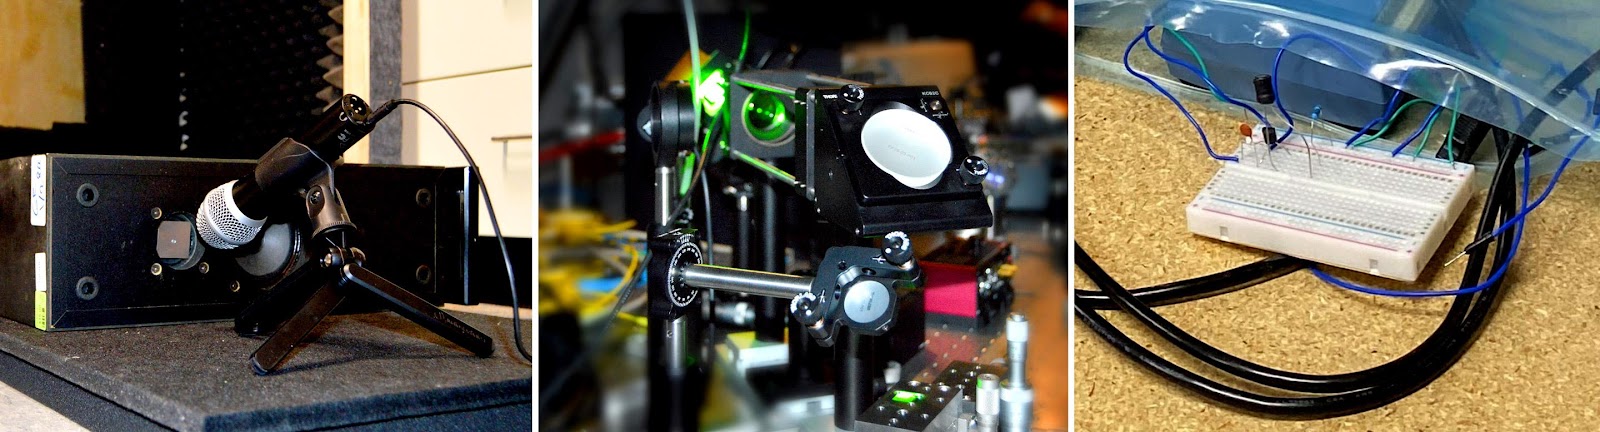 микрофон указывает на чёрный ящик с небольшой металлической пластиной; две руки держат печатную плату; зелёный лазер освещает зеркала и другие оптические компоненты